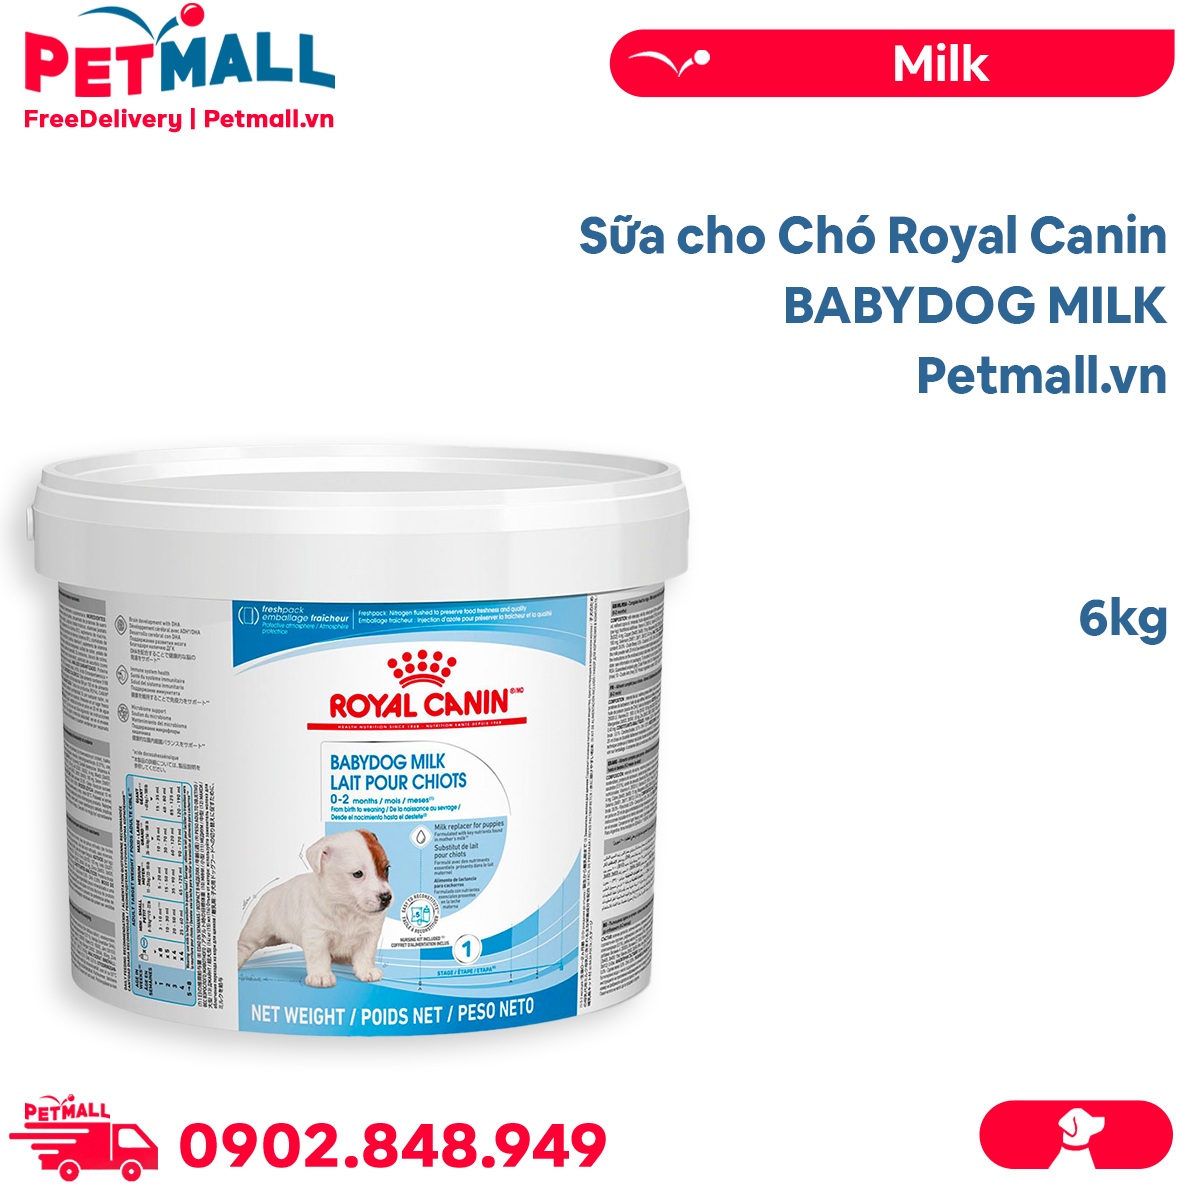 Sữa cho Chó Royal Canin BABYDOG MILK - 6kg Petmall